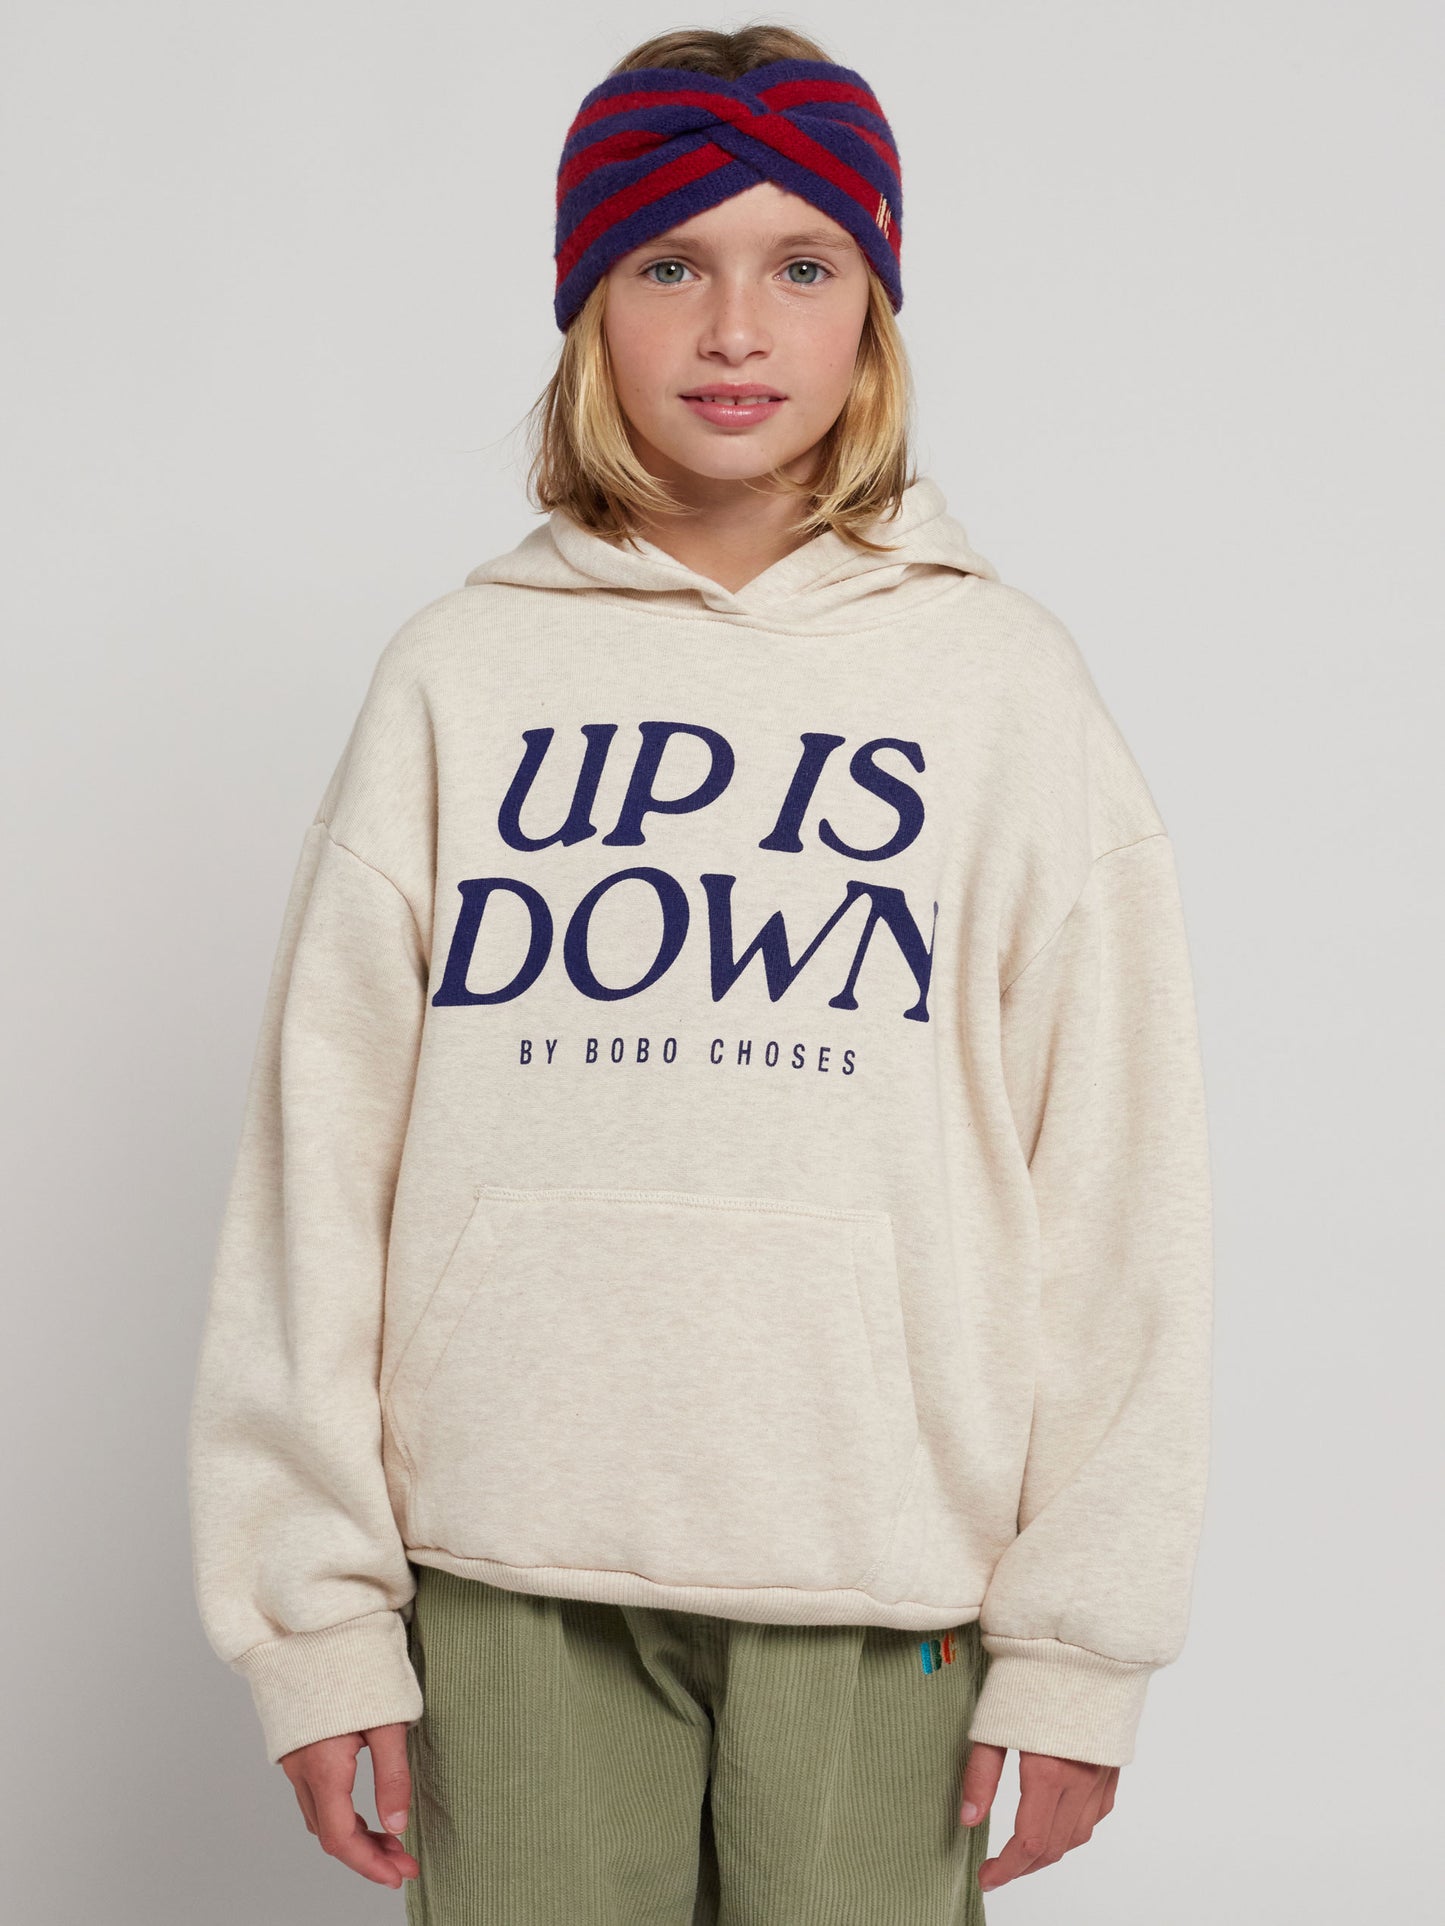 Up Is Down hooded sweatshirt